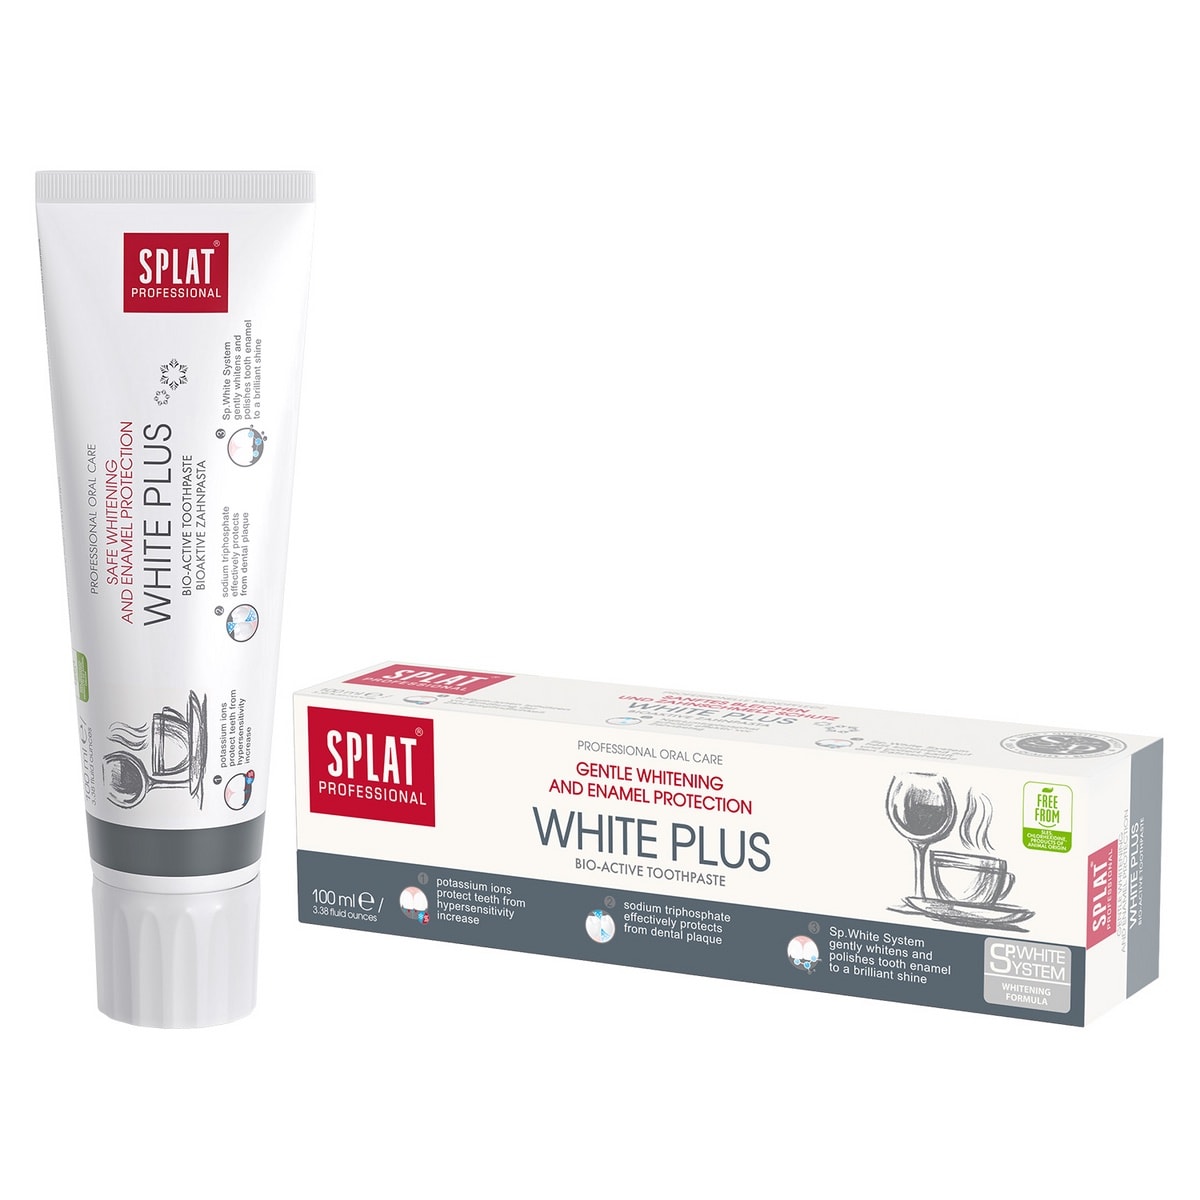 SPLAT Professional Series White Plus Toothpaste